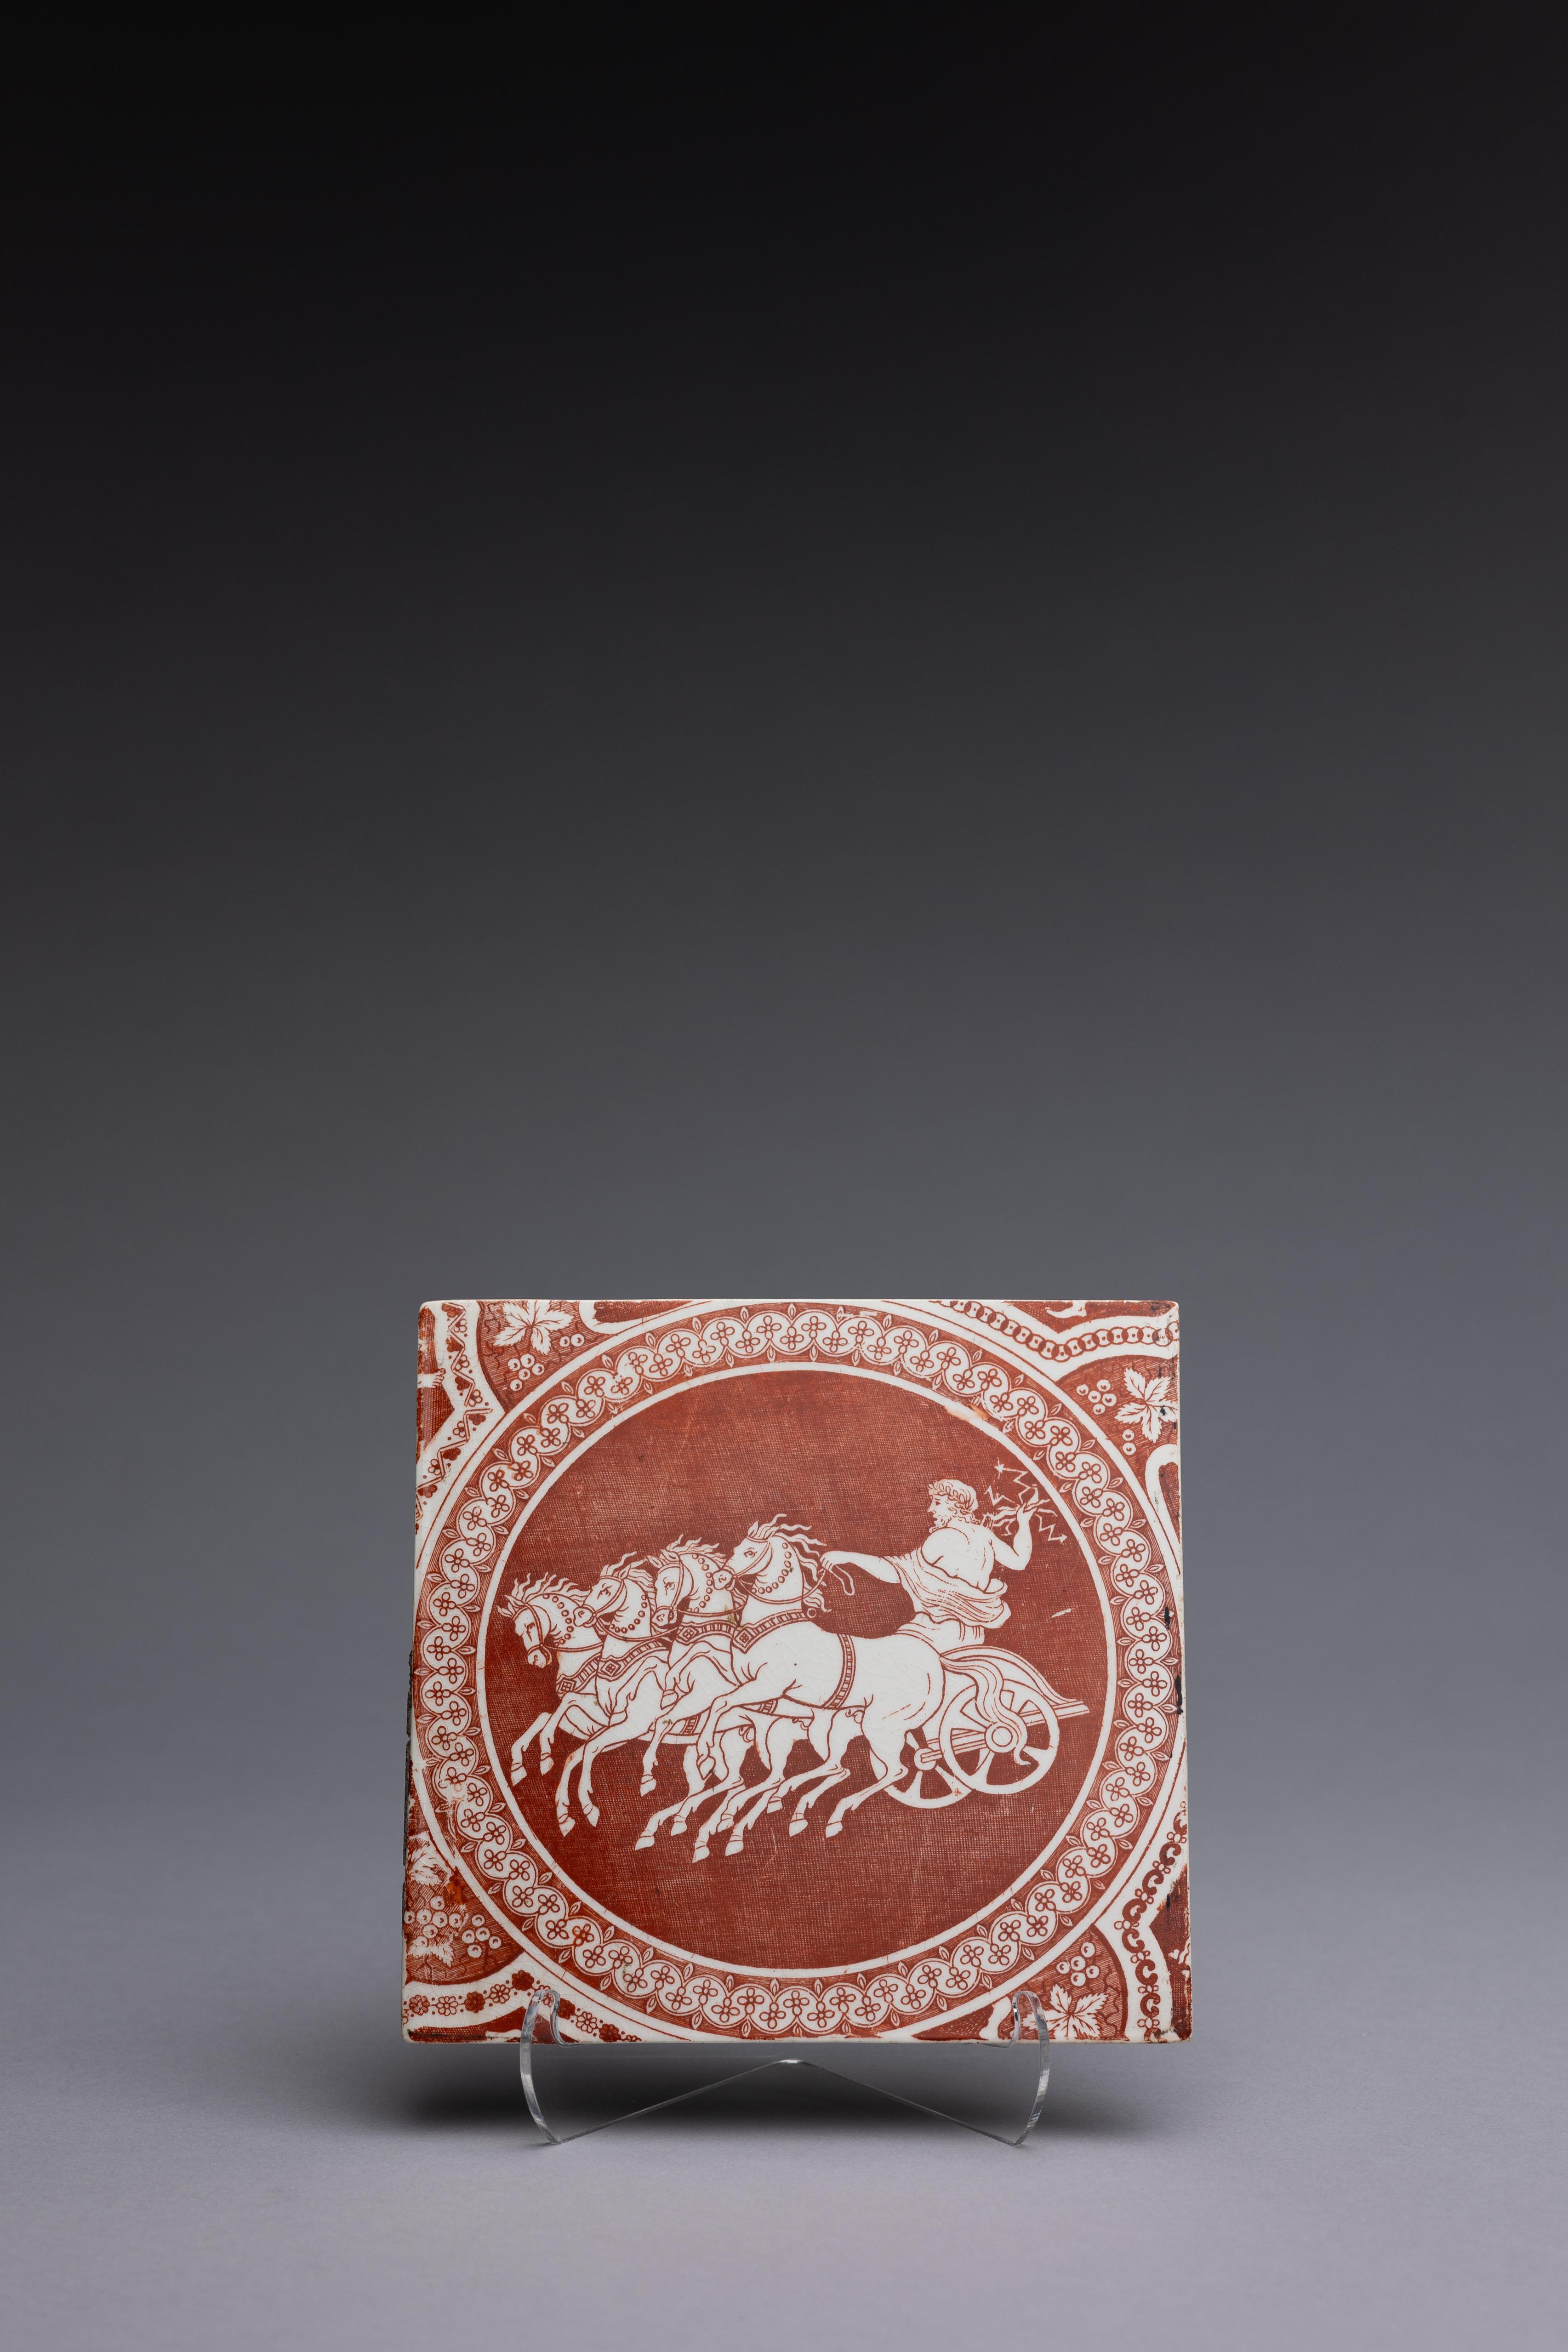 Neoklassizistische rote Kachel aus Transferware von Spode 1806-1810 mit dem Muster 